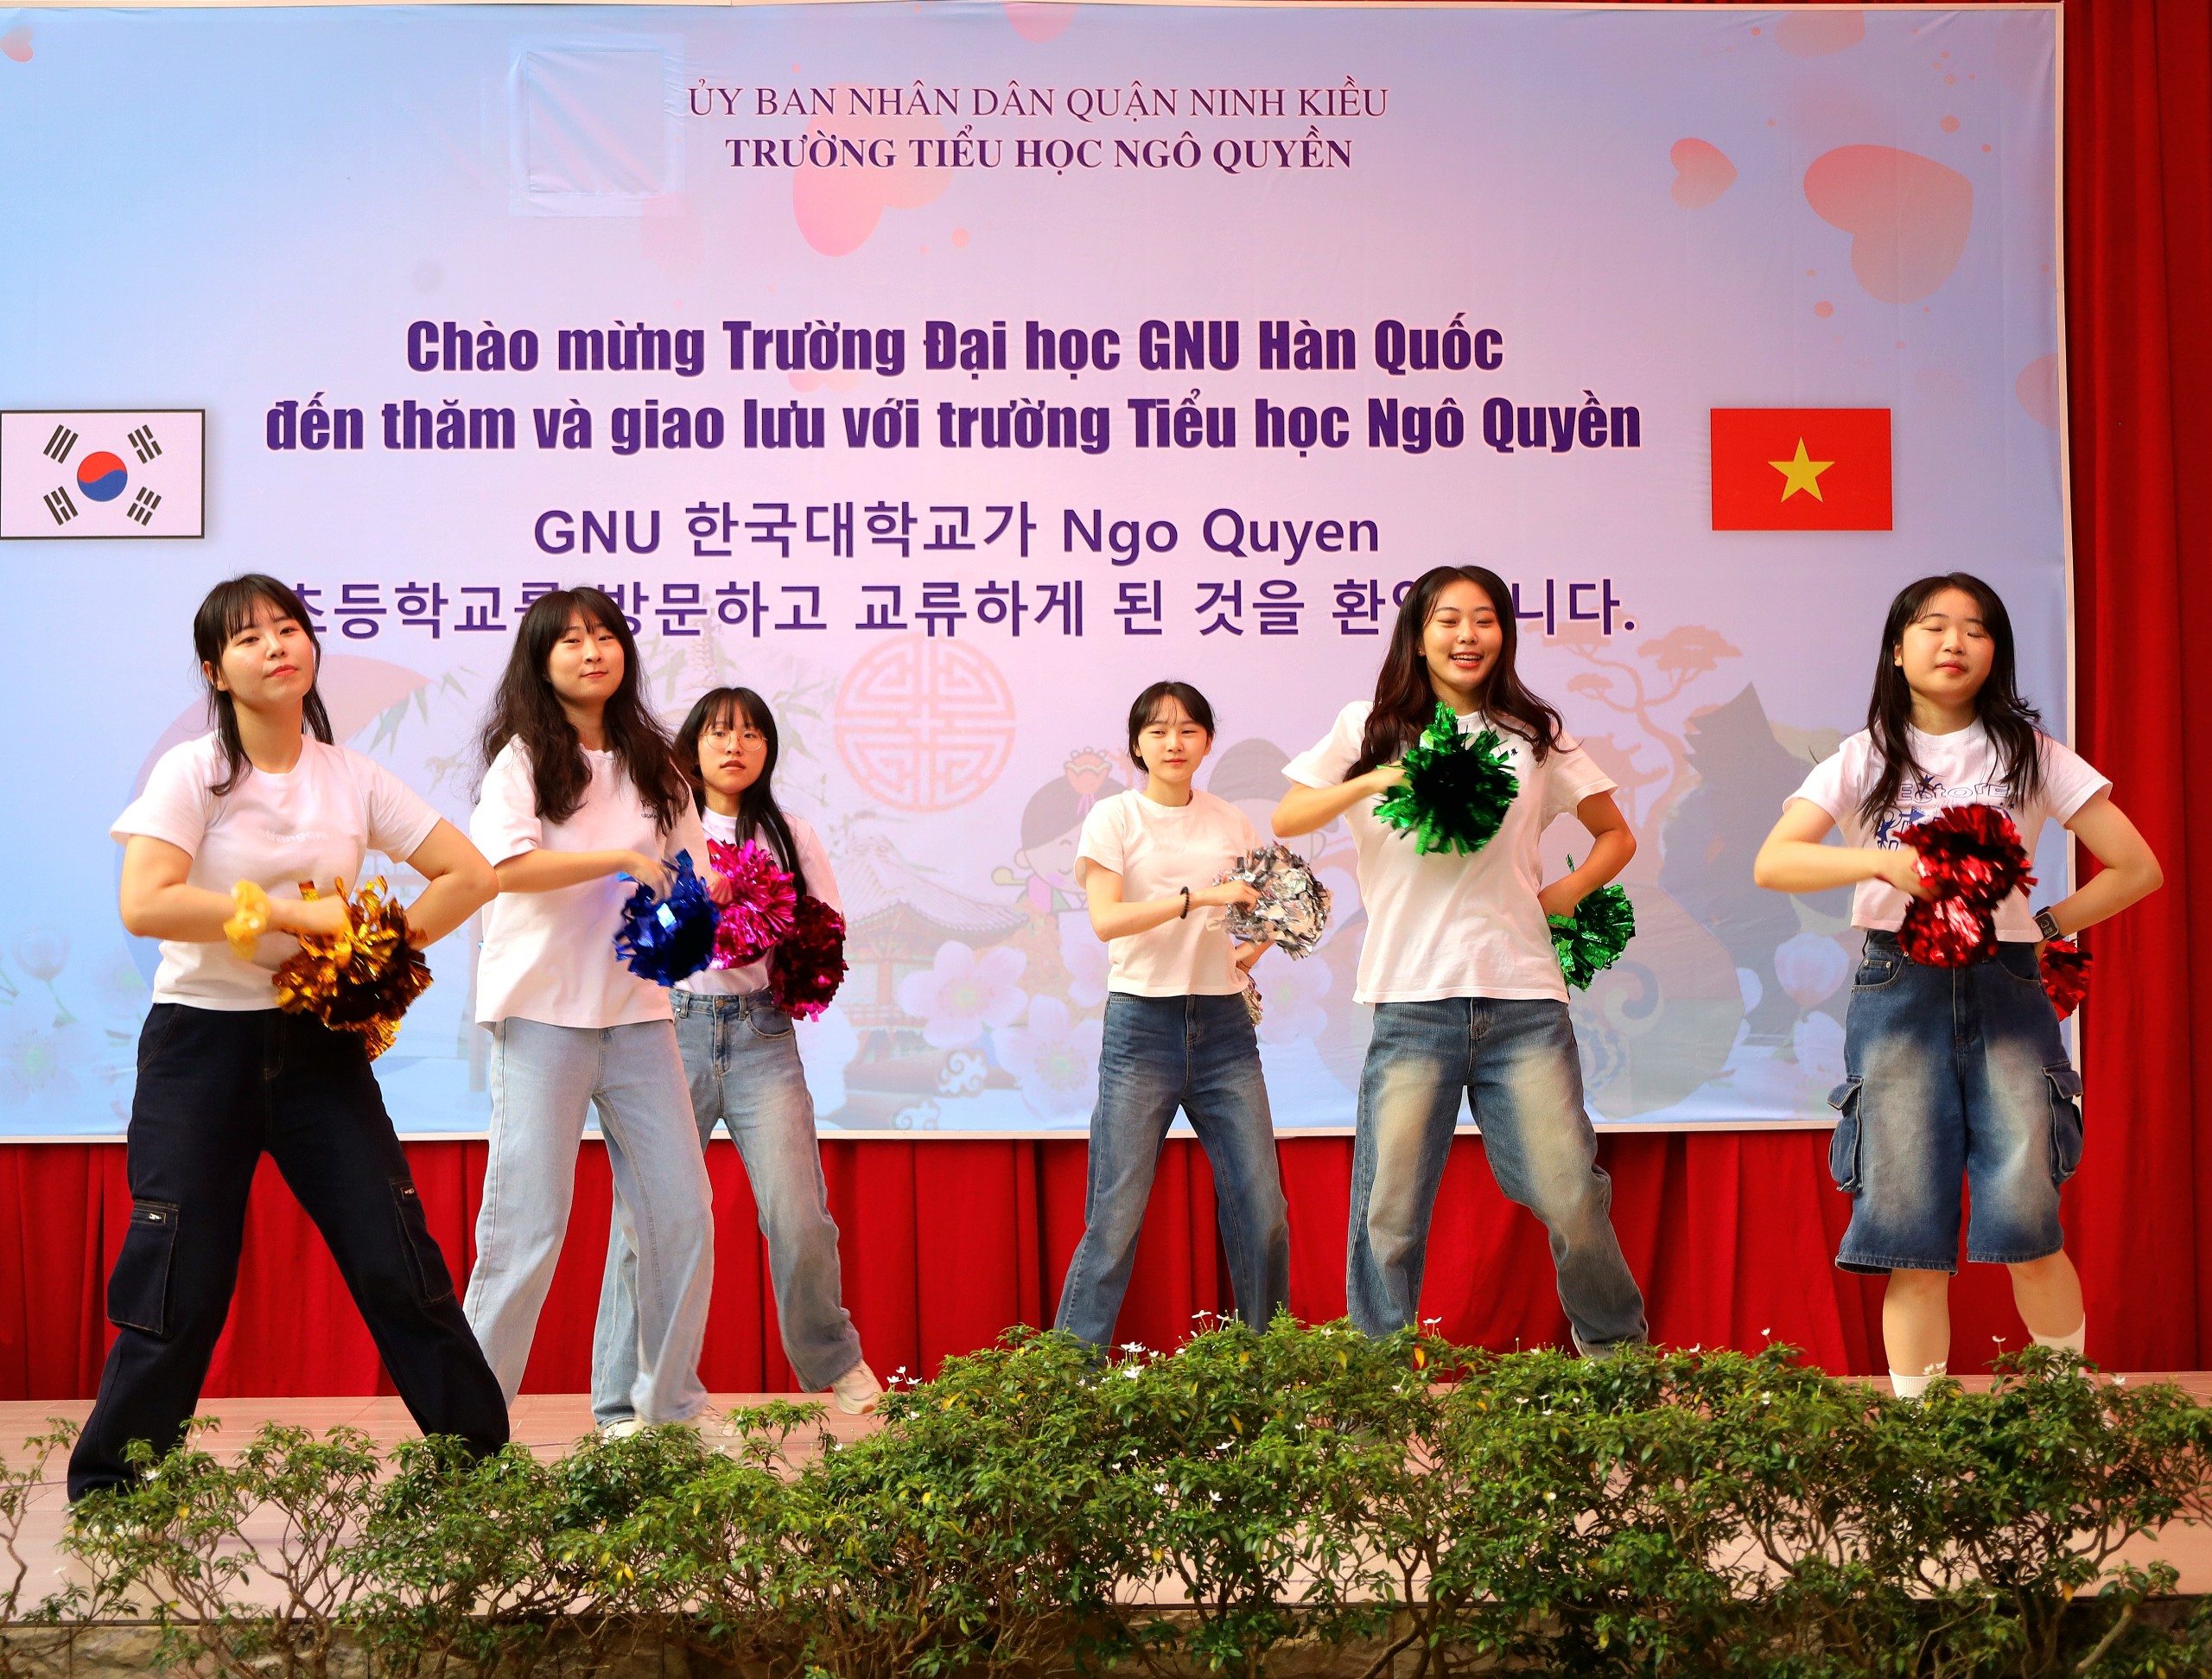 Sinh viên Trường Đại học quốc gia Gyeongsang biểu diễn các tiết mục nhảy hiện đại...